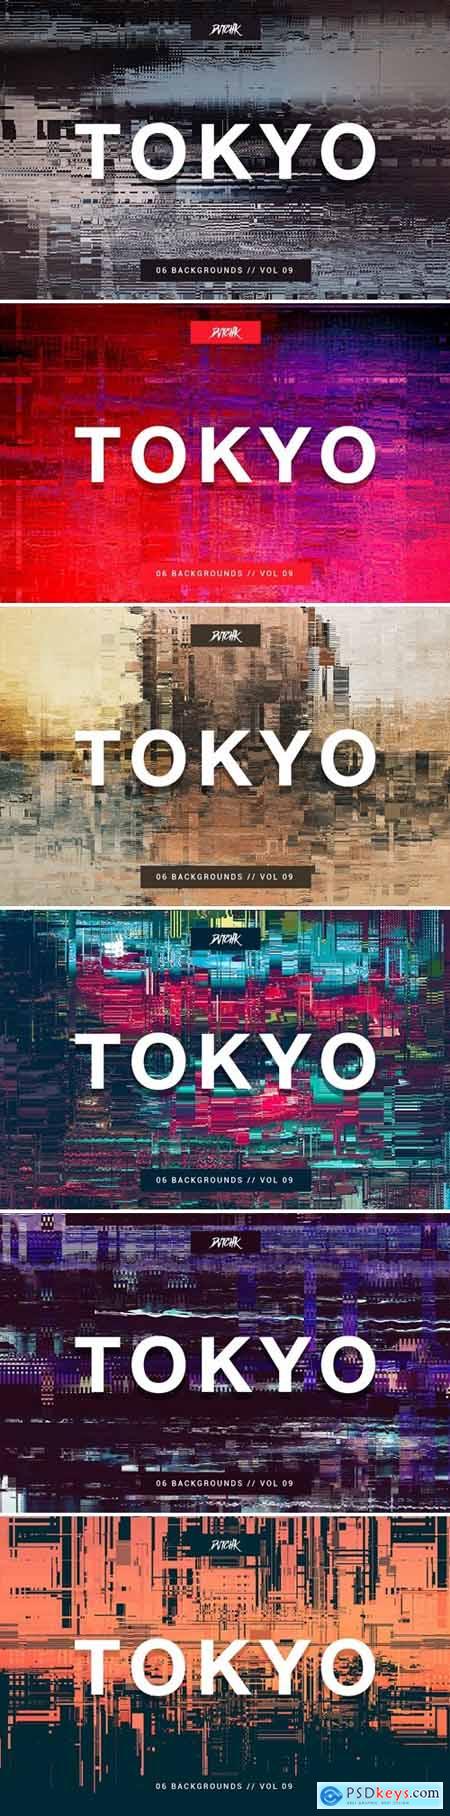 Tokyo- City Glitch Backgrounds - Vol. 09